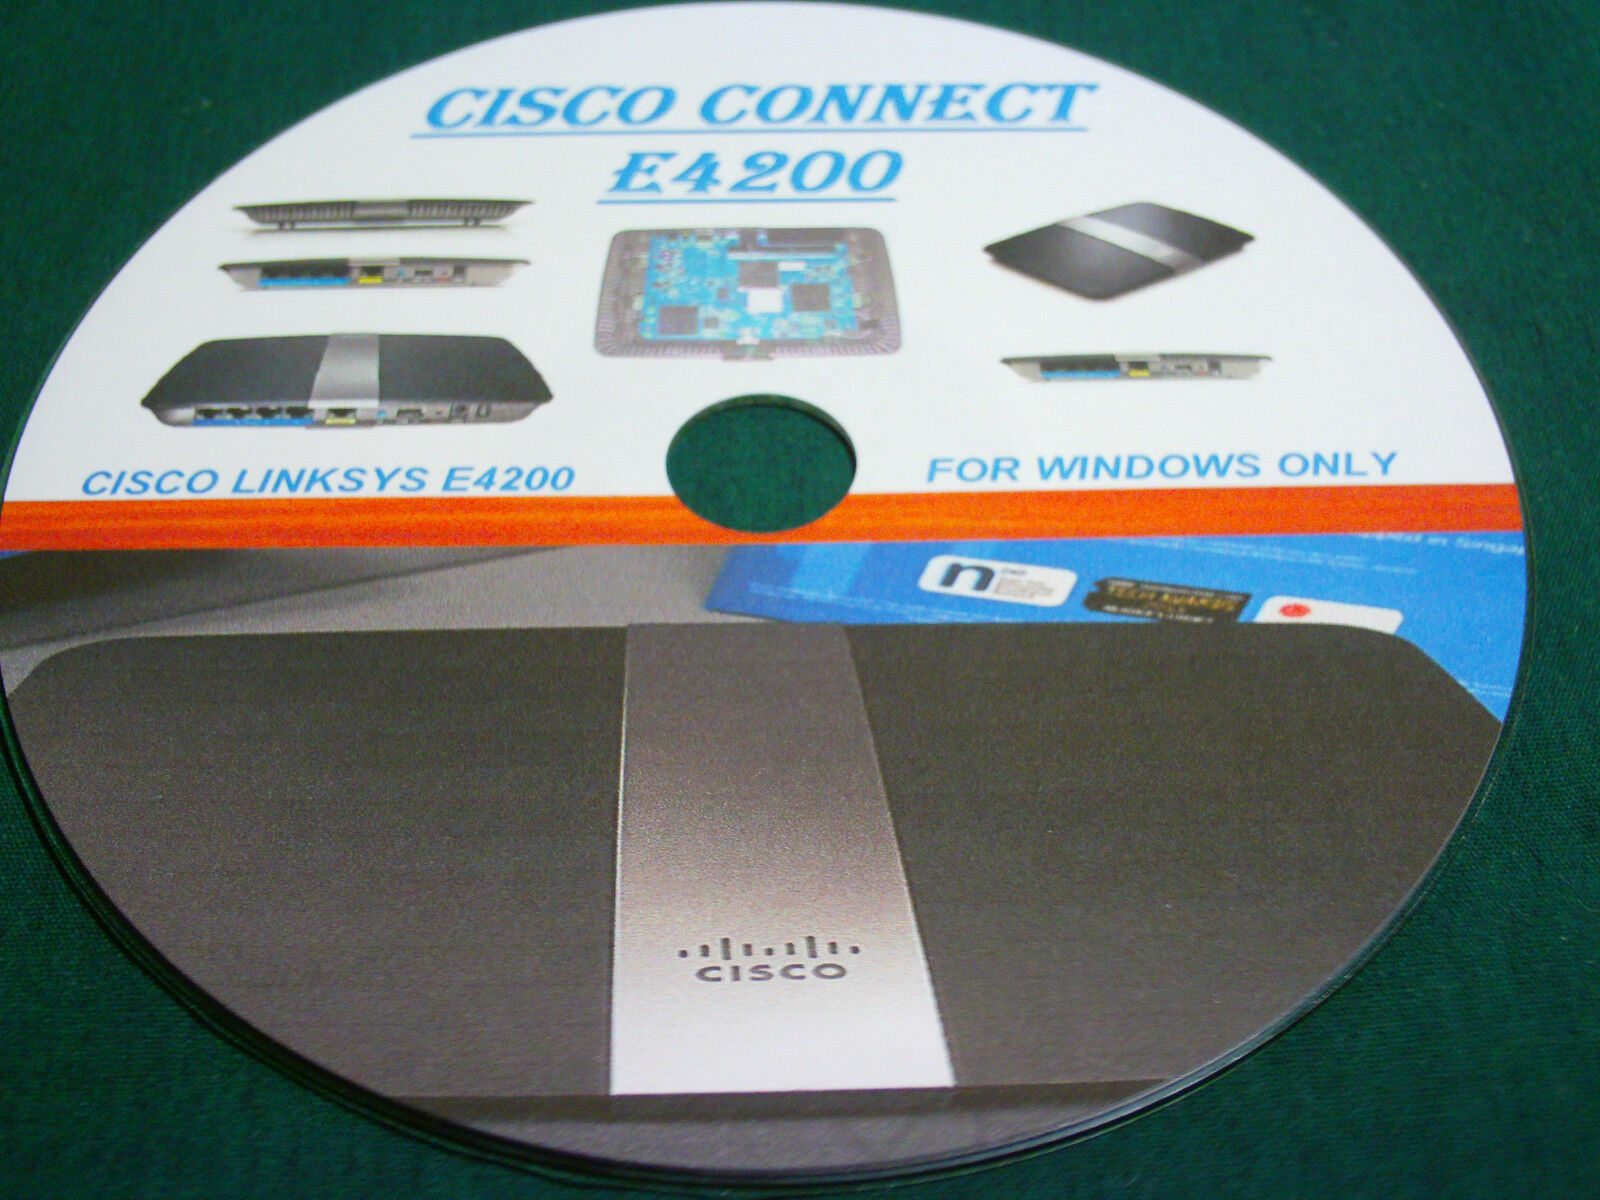 CISCO CONNECT E4200 SETUP CD